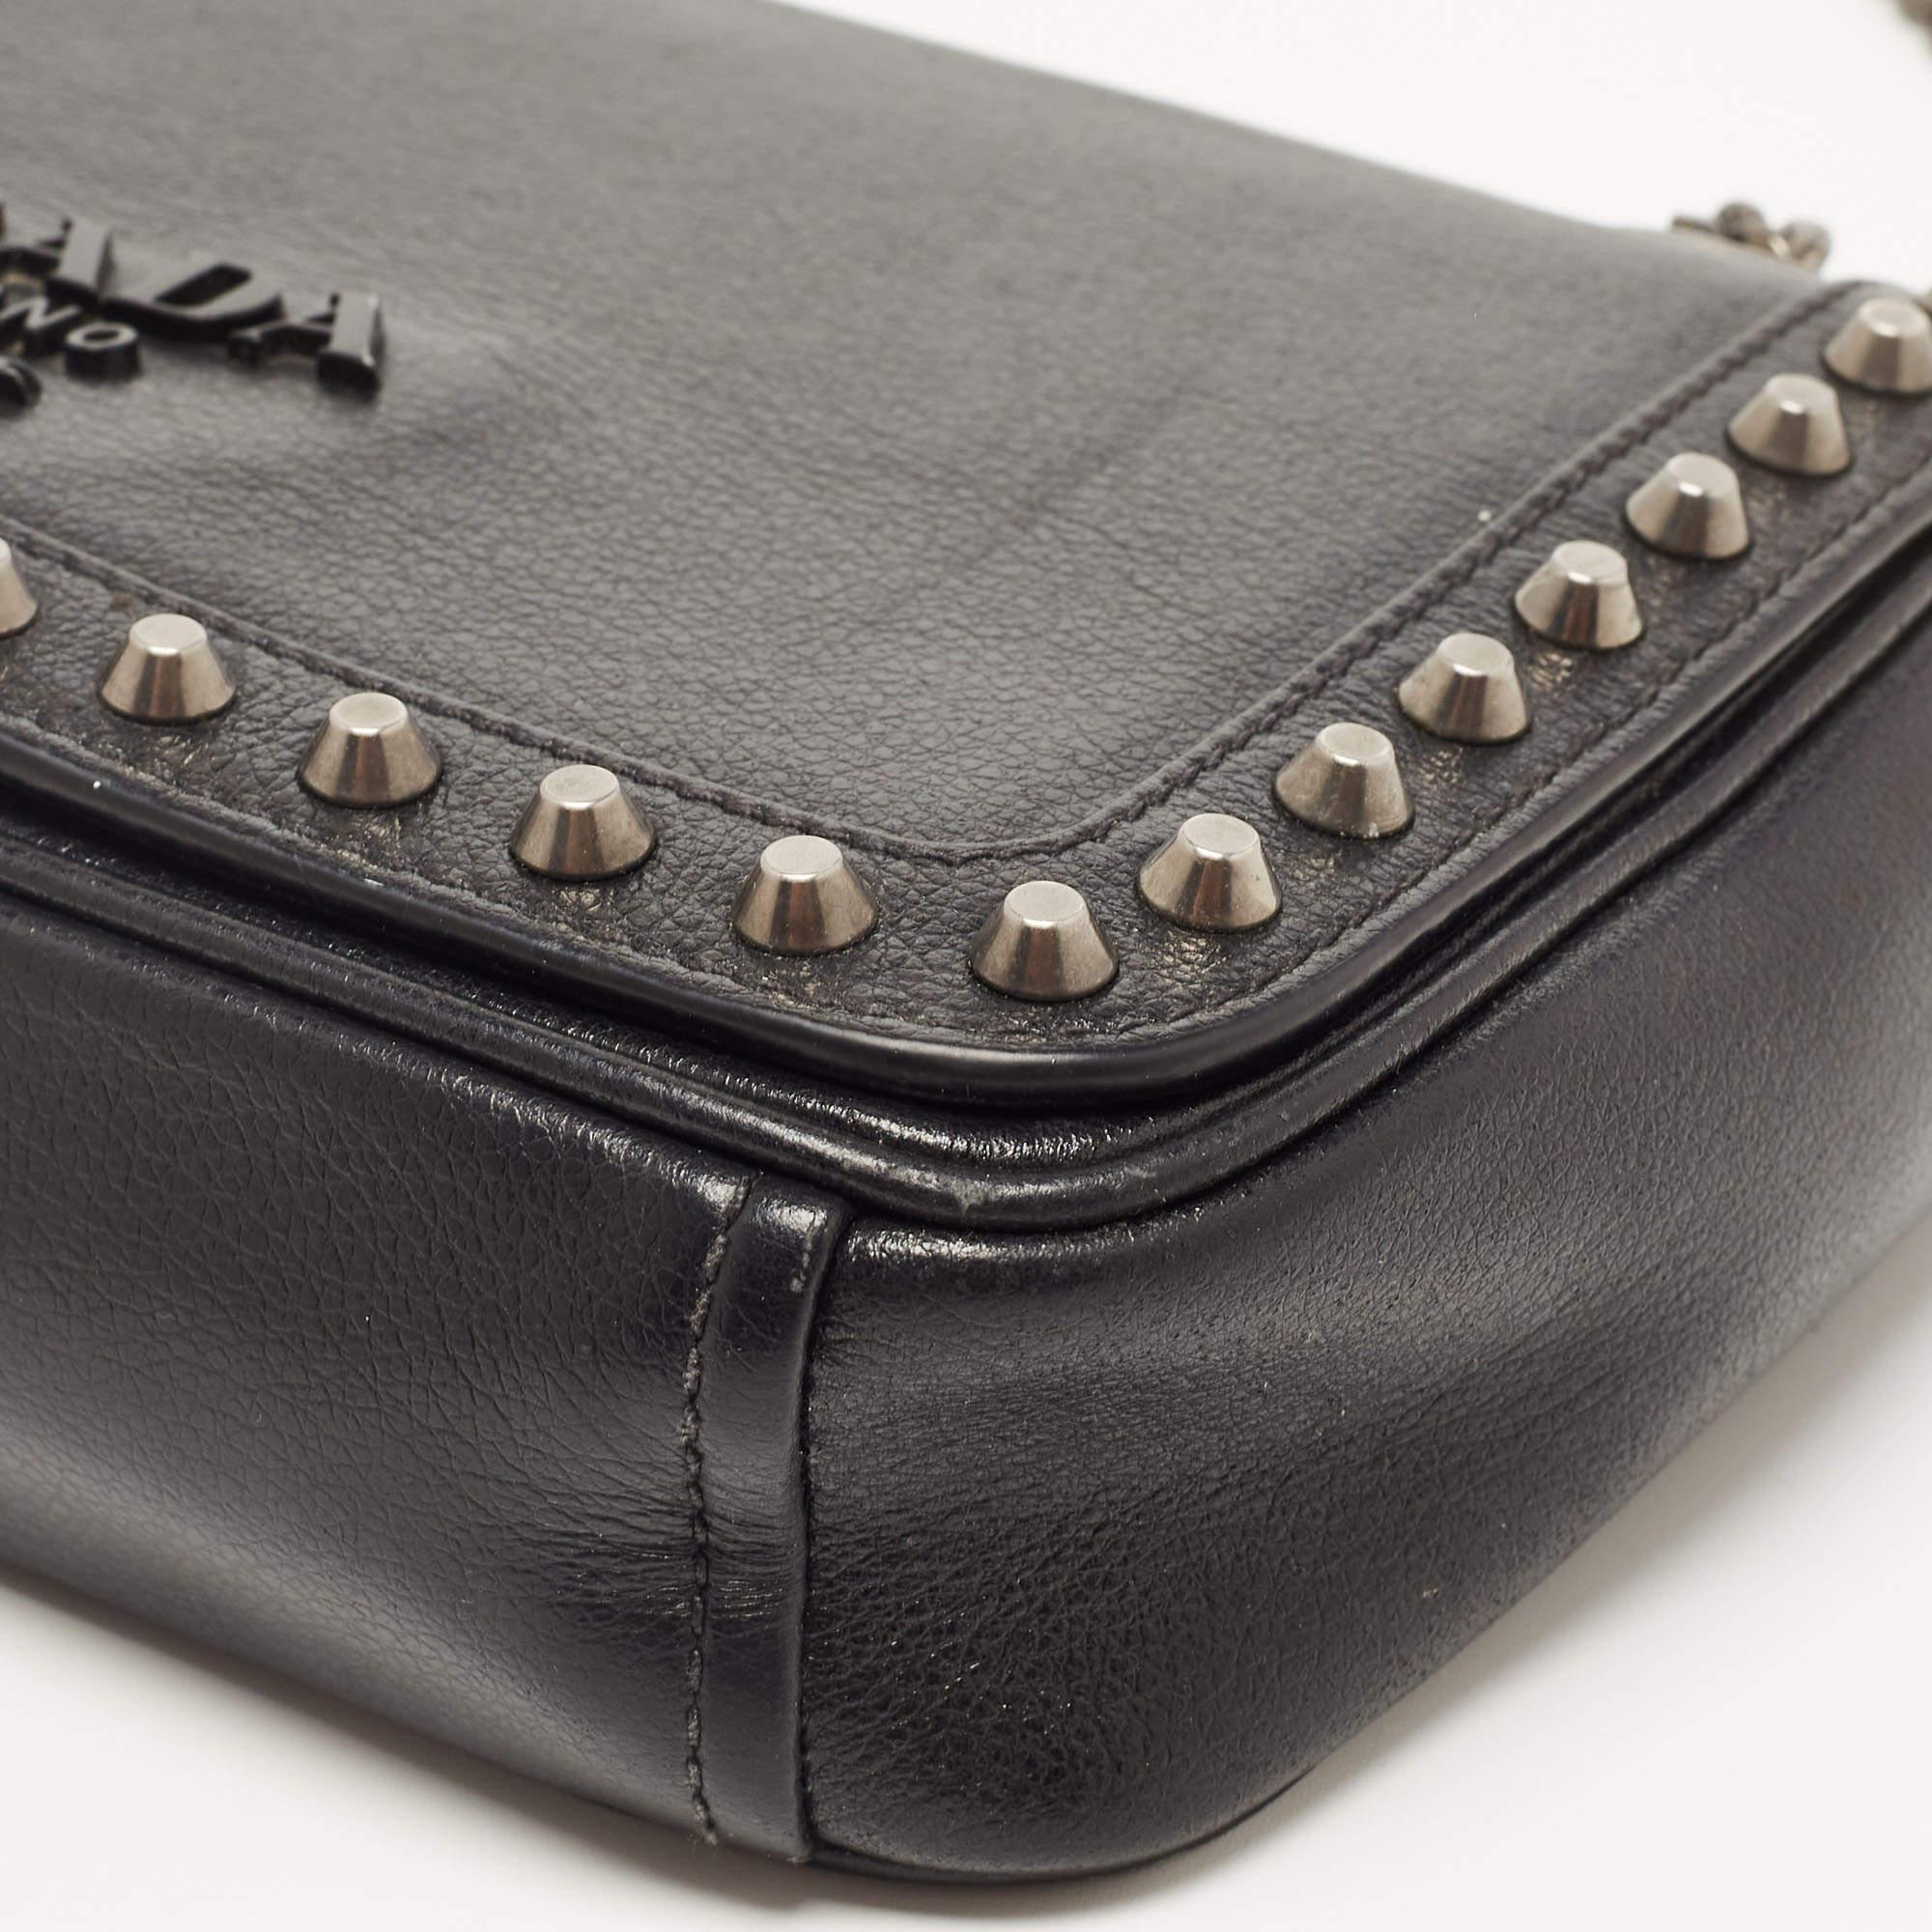 Prada Black Glace Leather Studded Flap Shoulder Bag 5